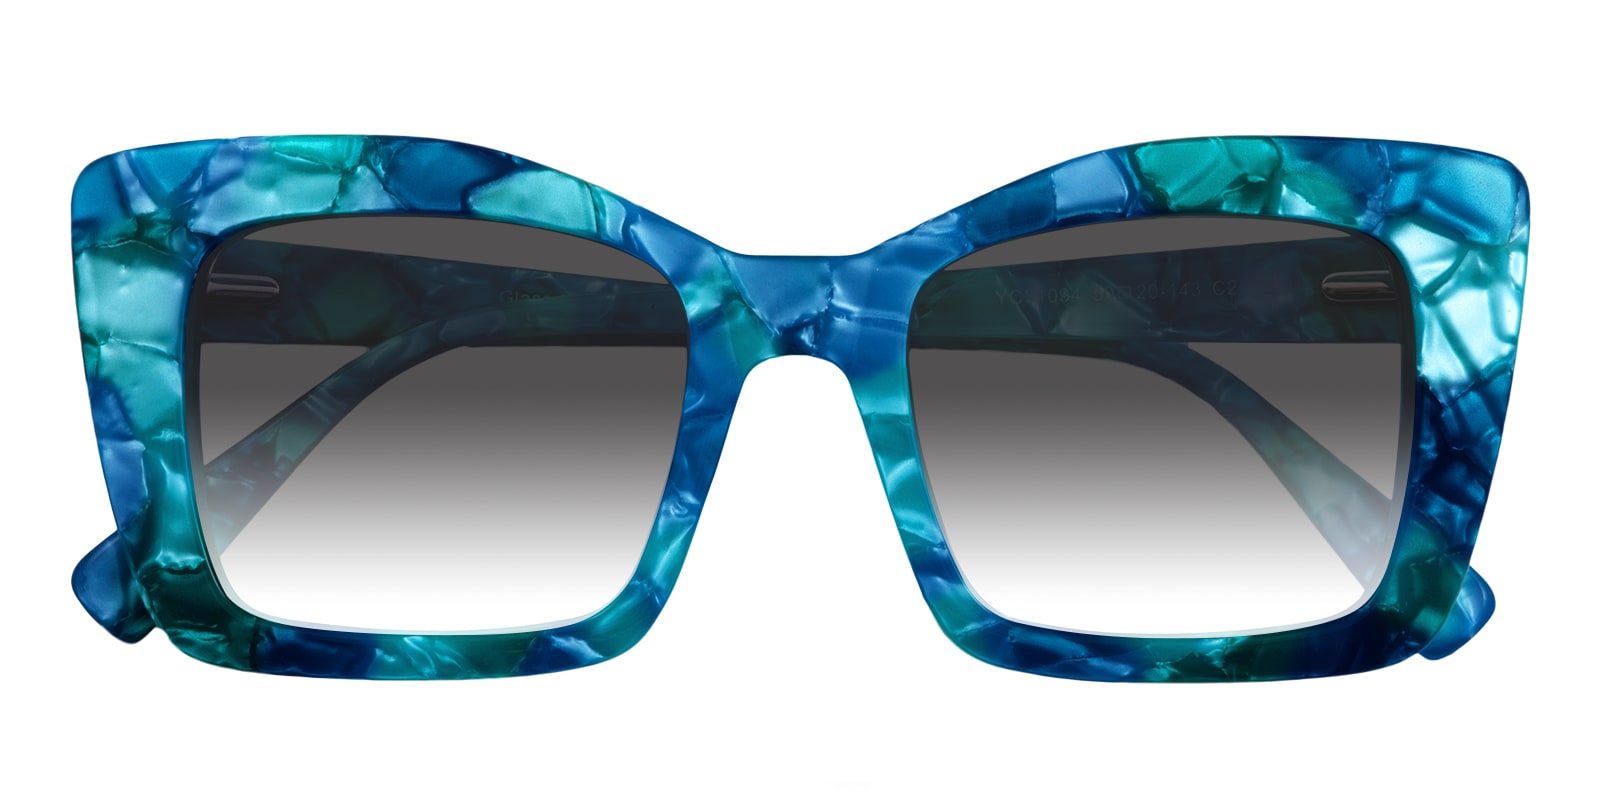 Cat Eye Sunglasses, Full Frame Blue Plastic - SUP1305